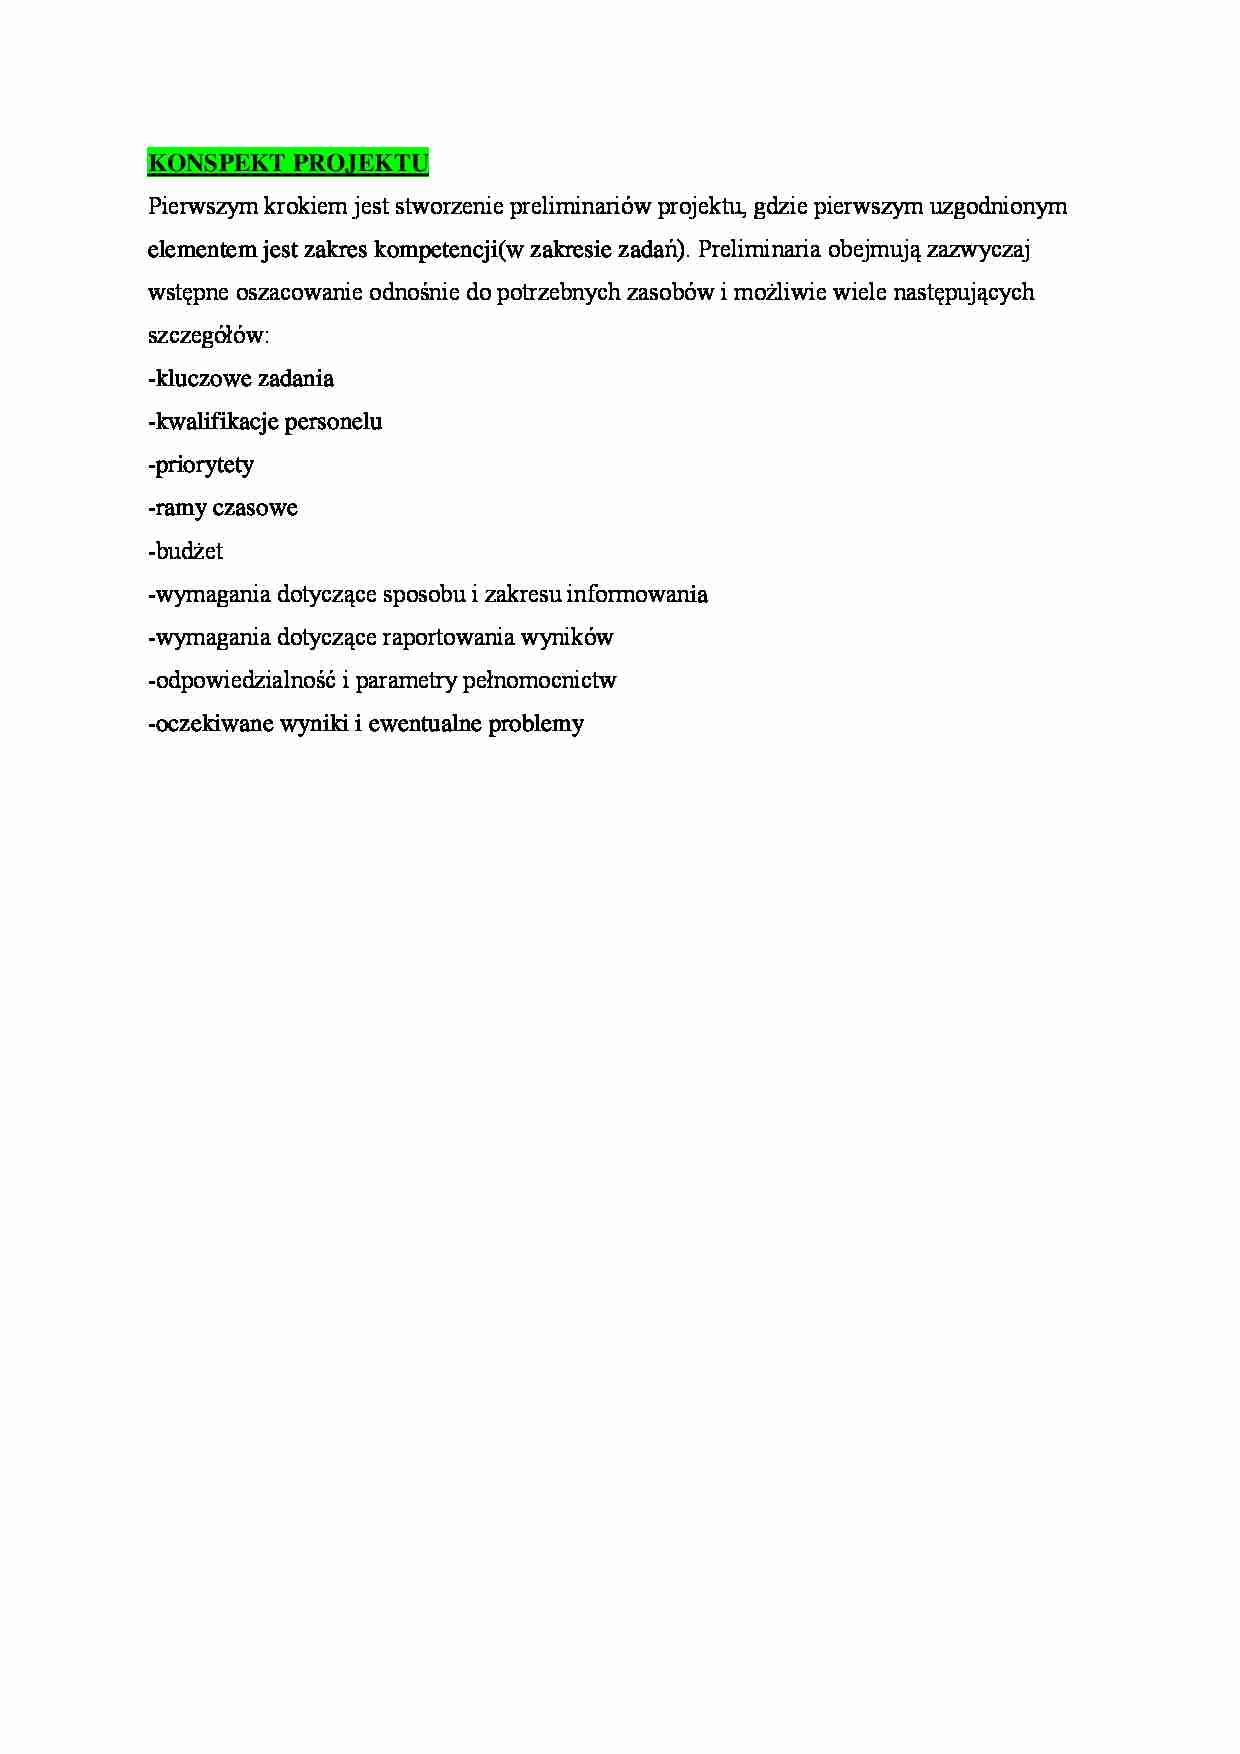 Zarządzanie projektami - konspekt projektu  - strona 1